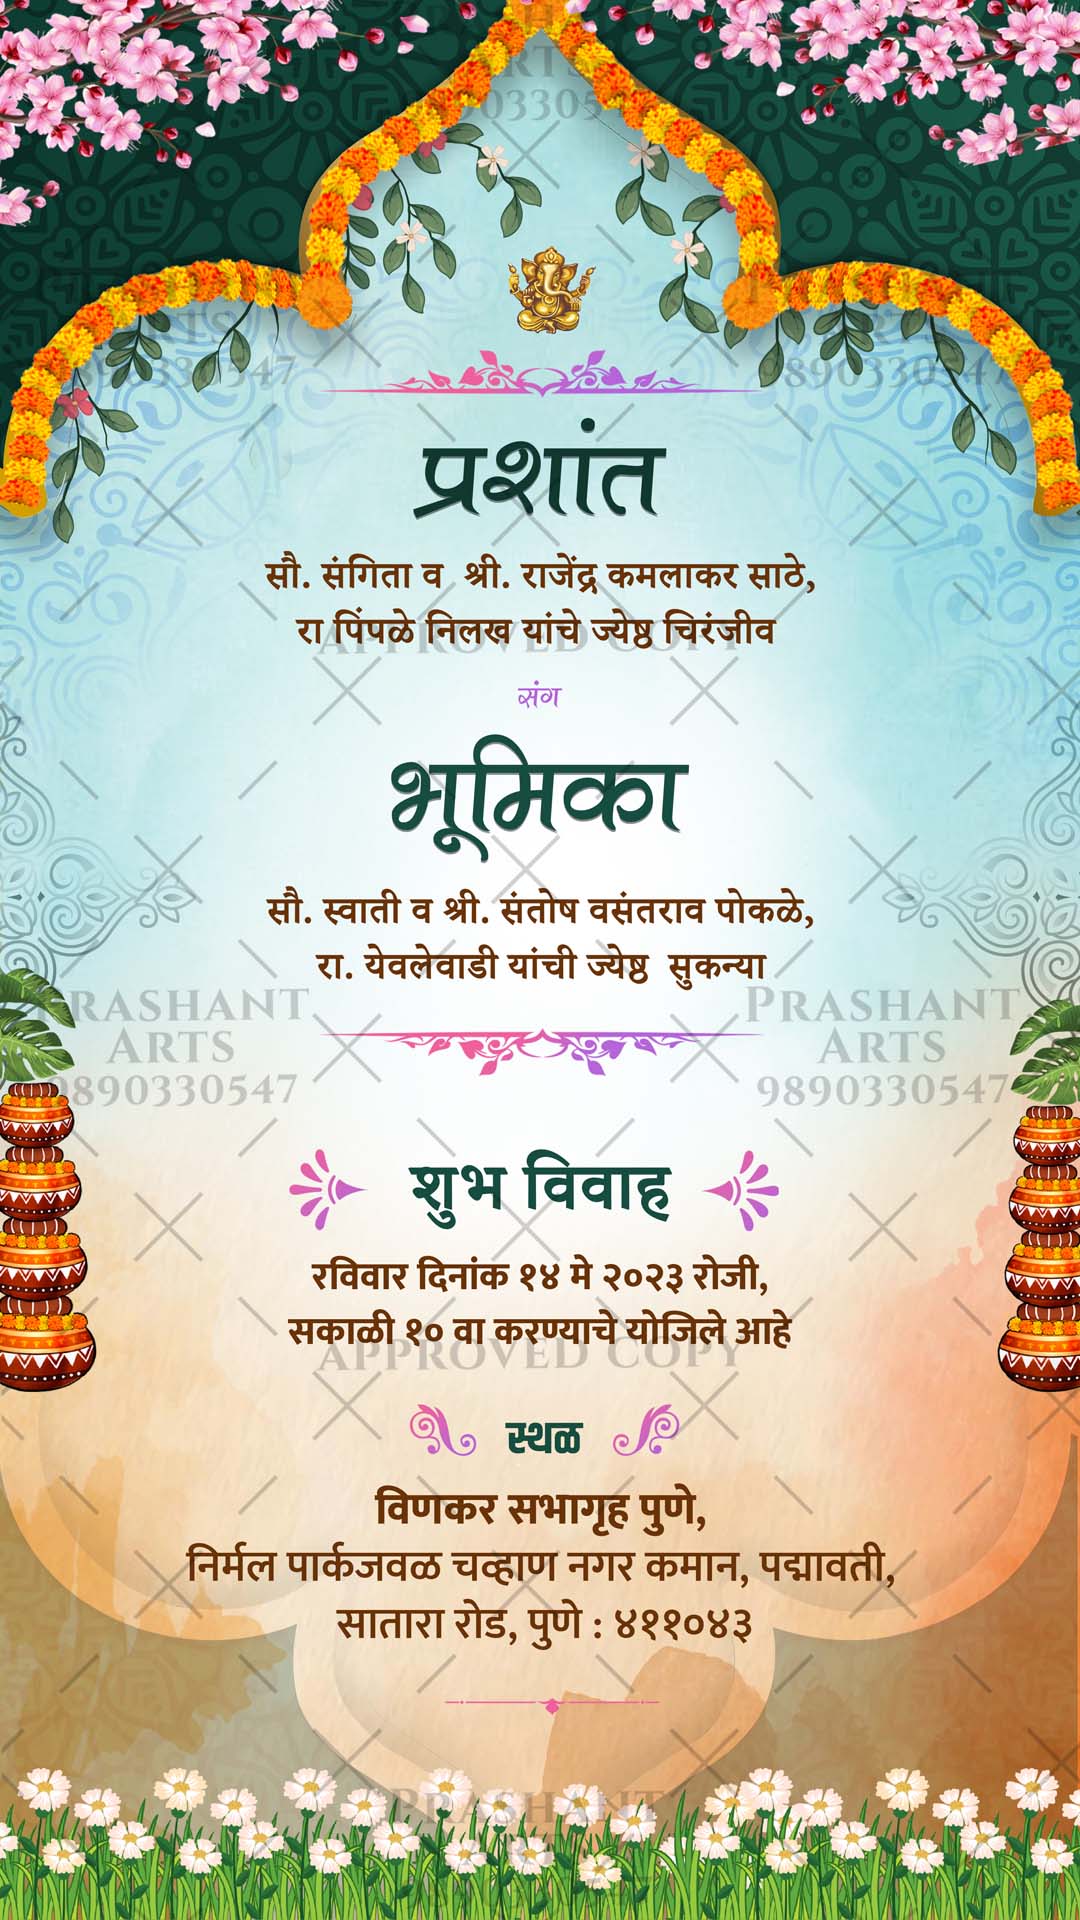 A Modern Twist on Tradition: Marathi Wedding Invitations | MR-009